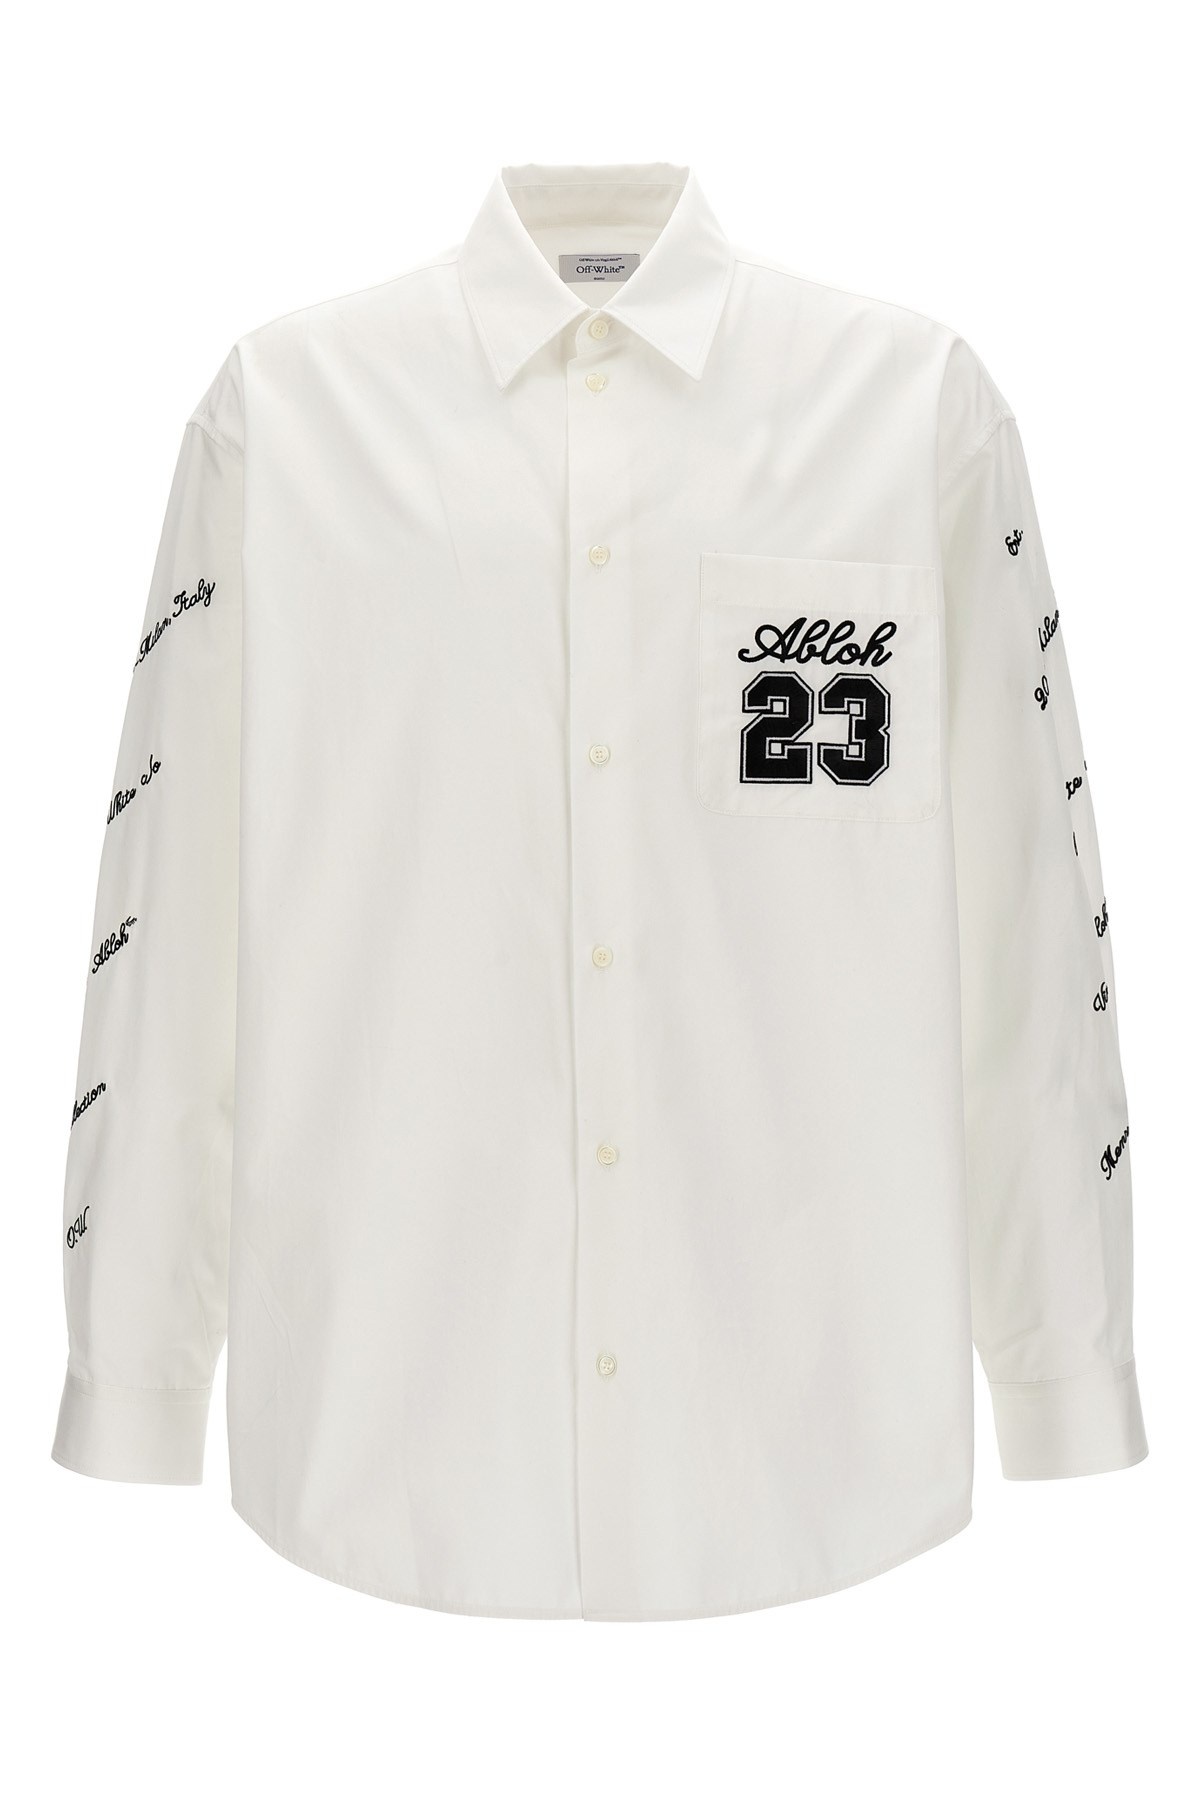 '23 Logo Heavycoat' shirt - 1